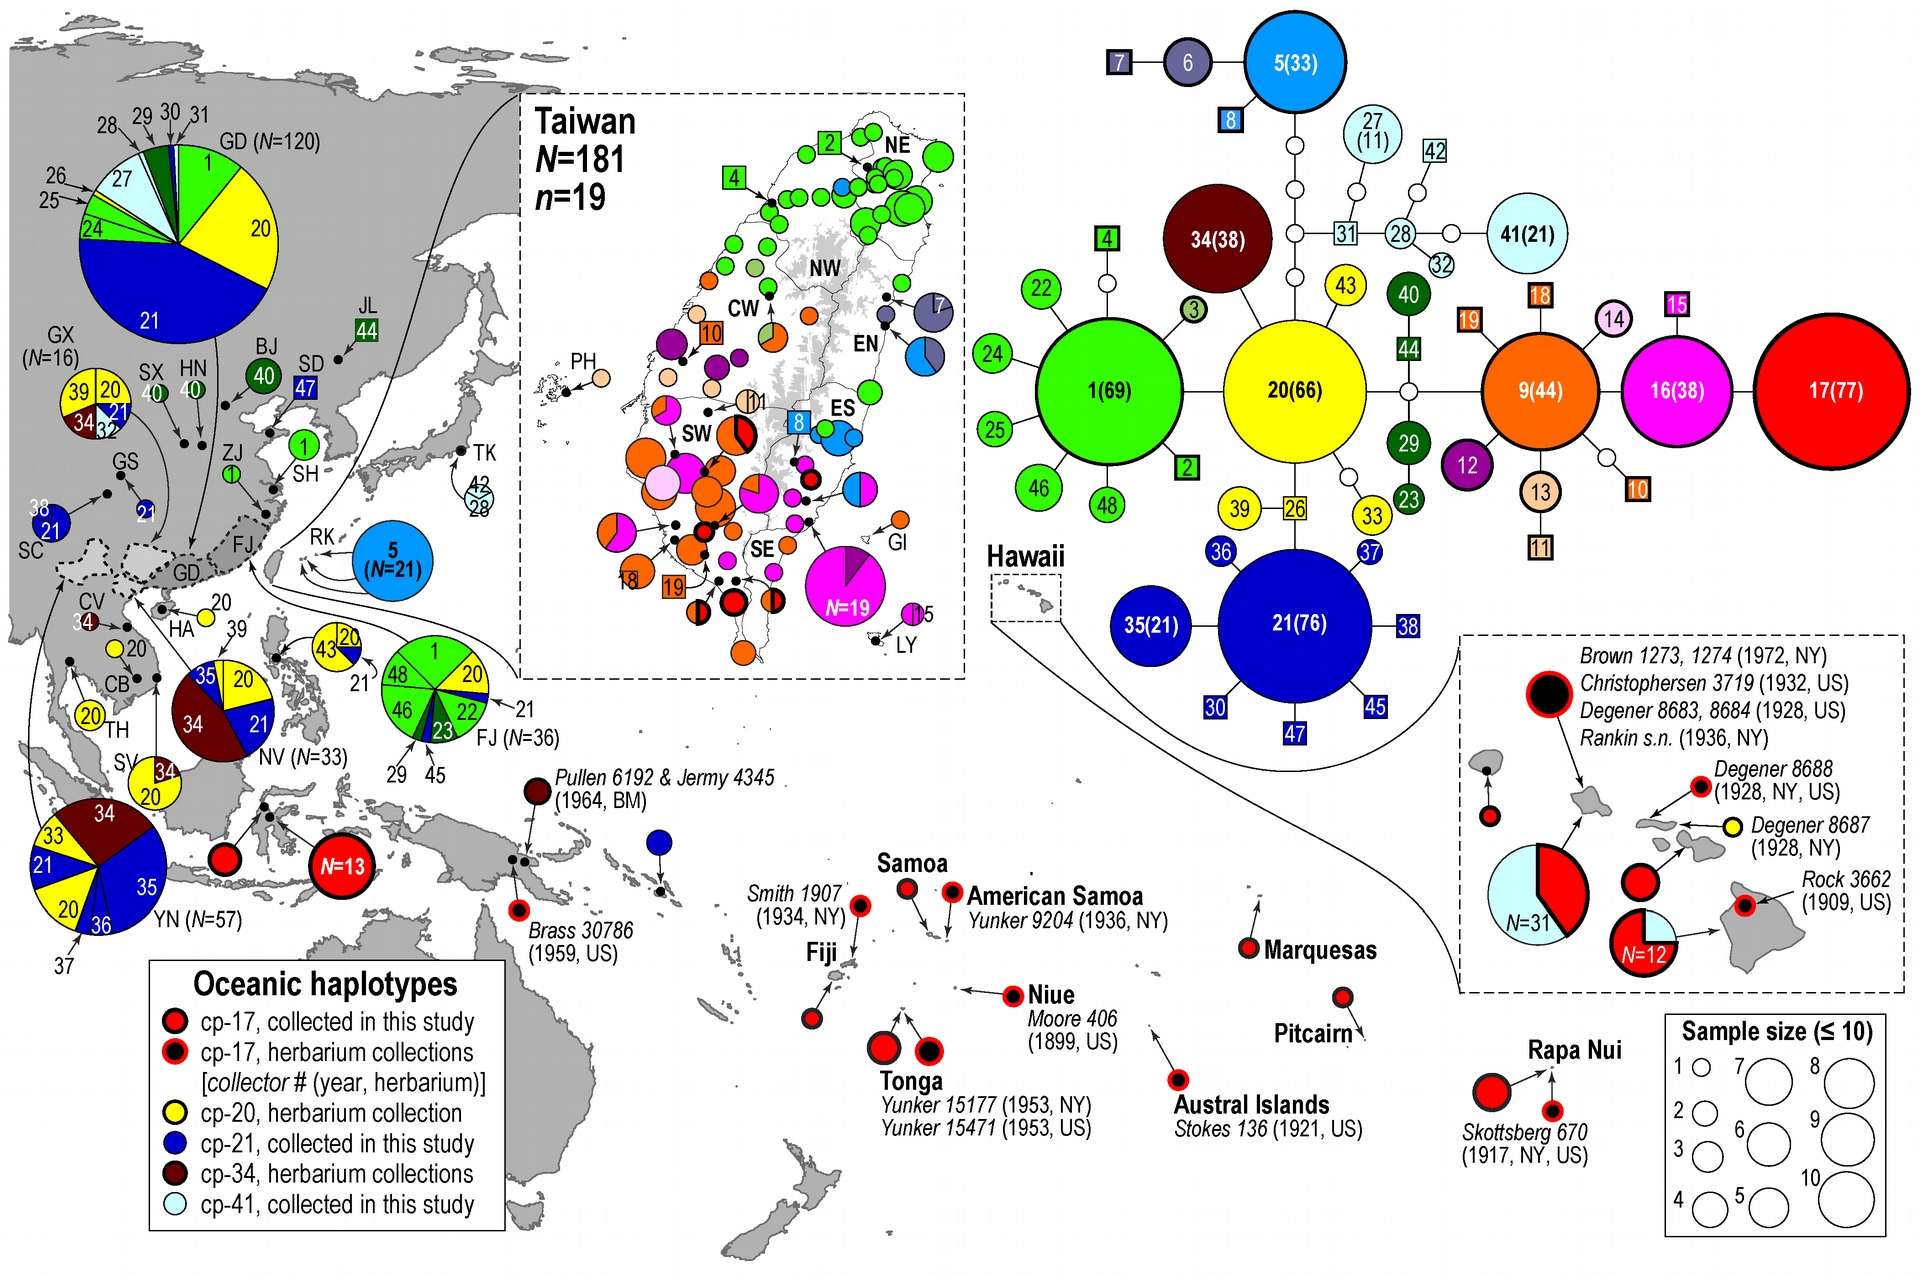 鍾國芳團隊搜集東亞與南太平洋各島嶼的構樹樣本，根據特定葉綠體基因序列分析顯示，這些構樹樣本帶有 48 種不同的單倍型。其中 CP-17 單倍型（紅色圓圈）在大洋洲佔大多數，也出現在臺灣南部。圖中右上方可看到，CP-17 由臺灣南部特有的 CP-16 （粉紅色圓圈）、CP-9 （橘色圓圈）演化而來，與臺灣北部、亞洲大陸常見的 CP-1 （綠色圓圈）, CP-20 （黃色圓圈）關係較遠。資料來源│A holistic picture of Austronesian migrations revealed by phylogeography of Pacific paper mulberry